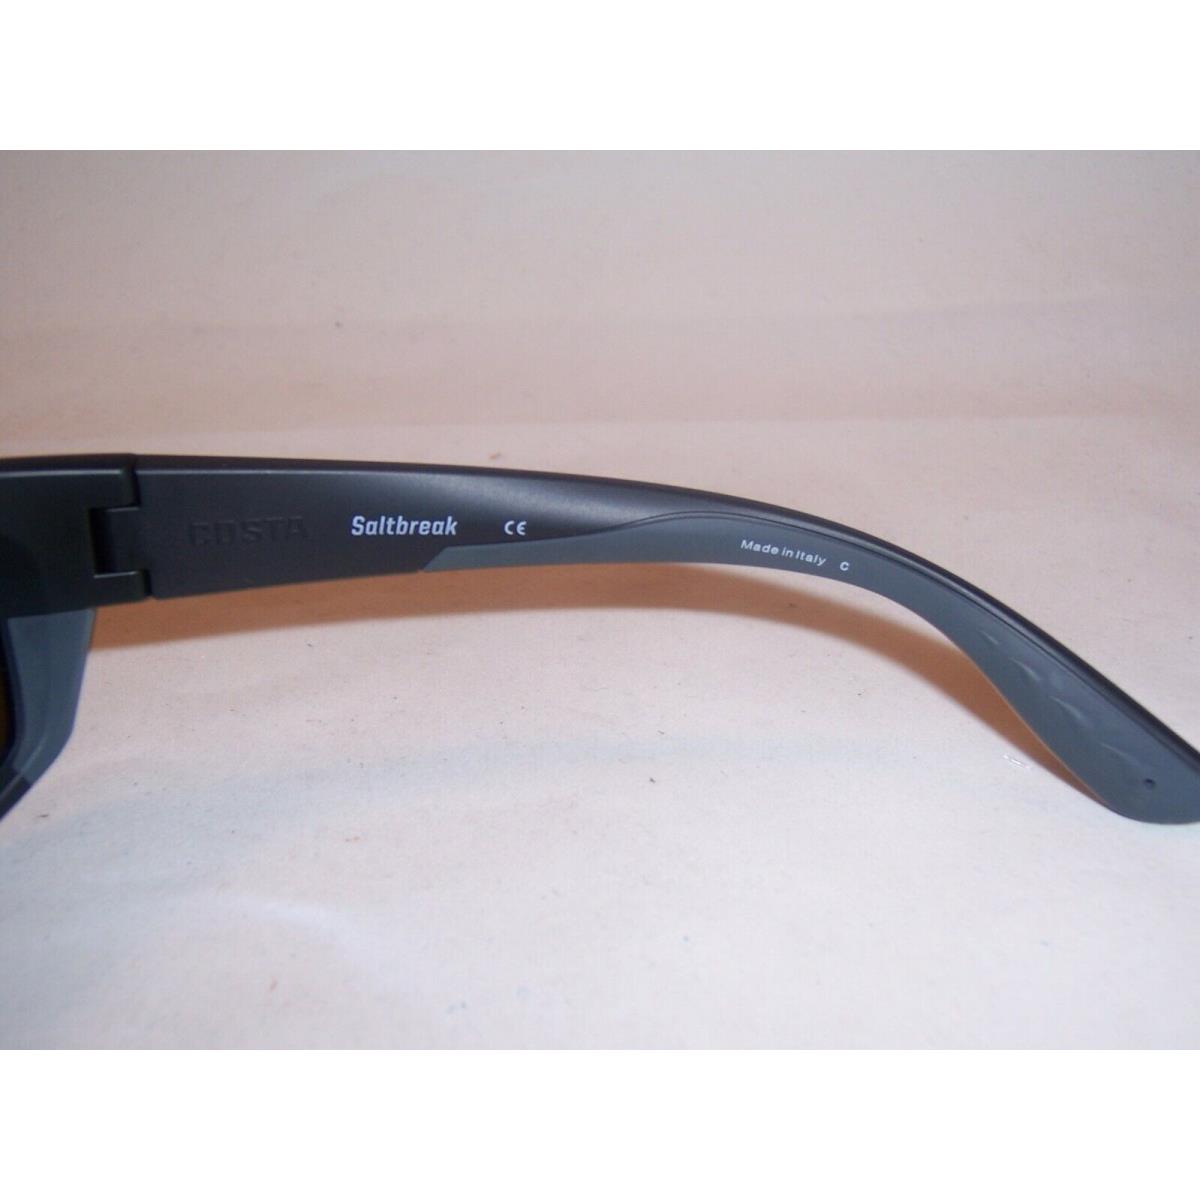 Costa Del Mar sunglasses Saltbreak - Black Frame, Blue Lens 5